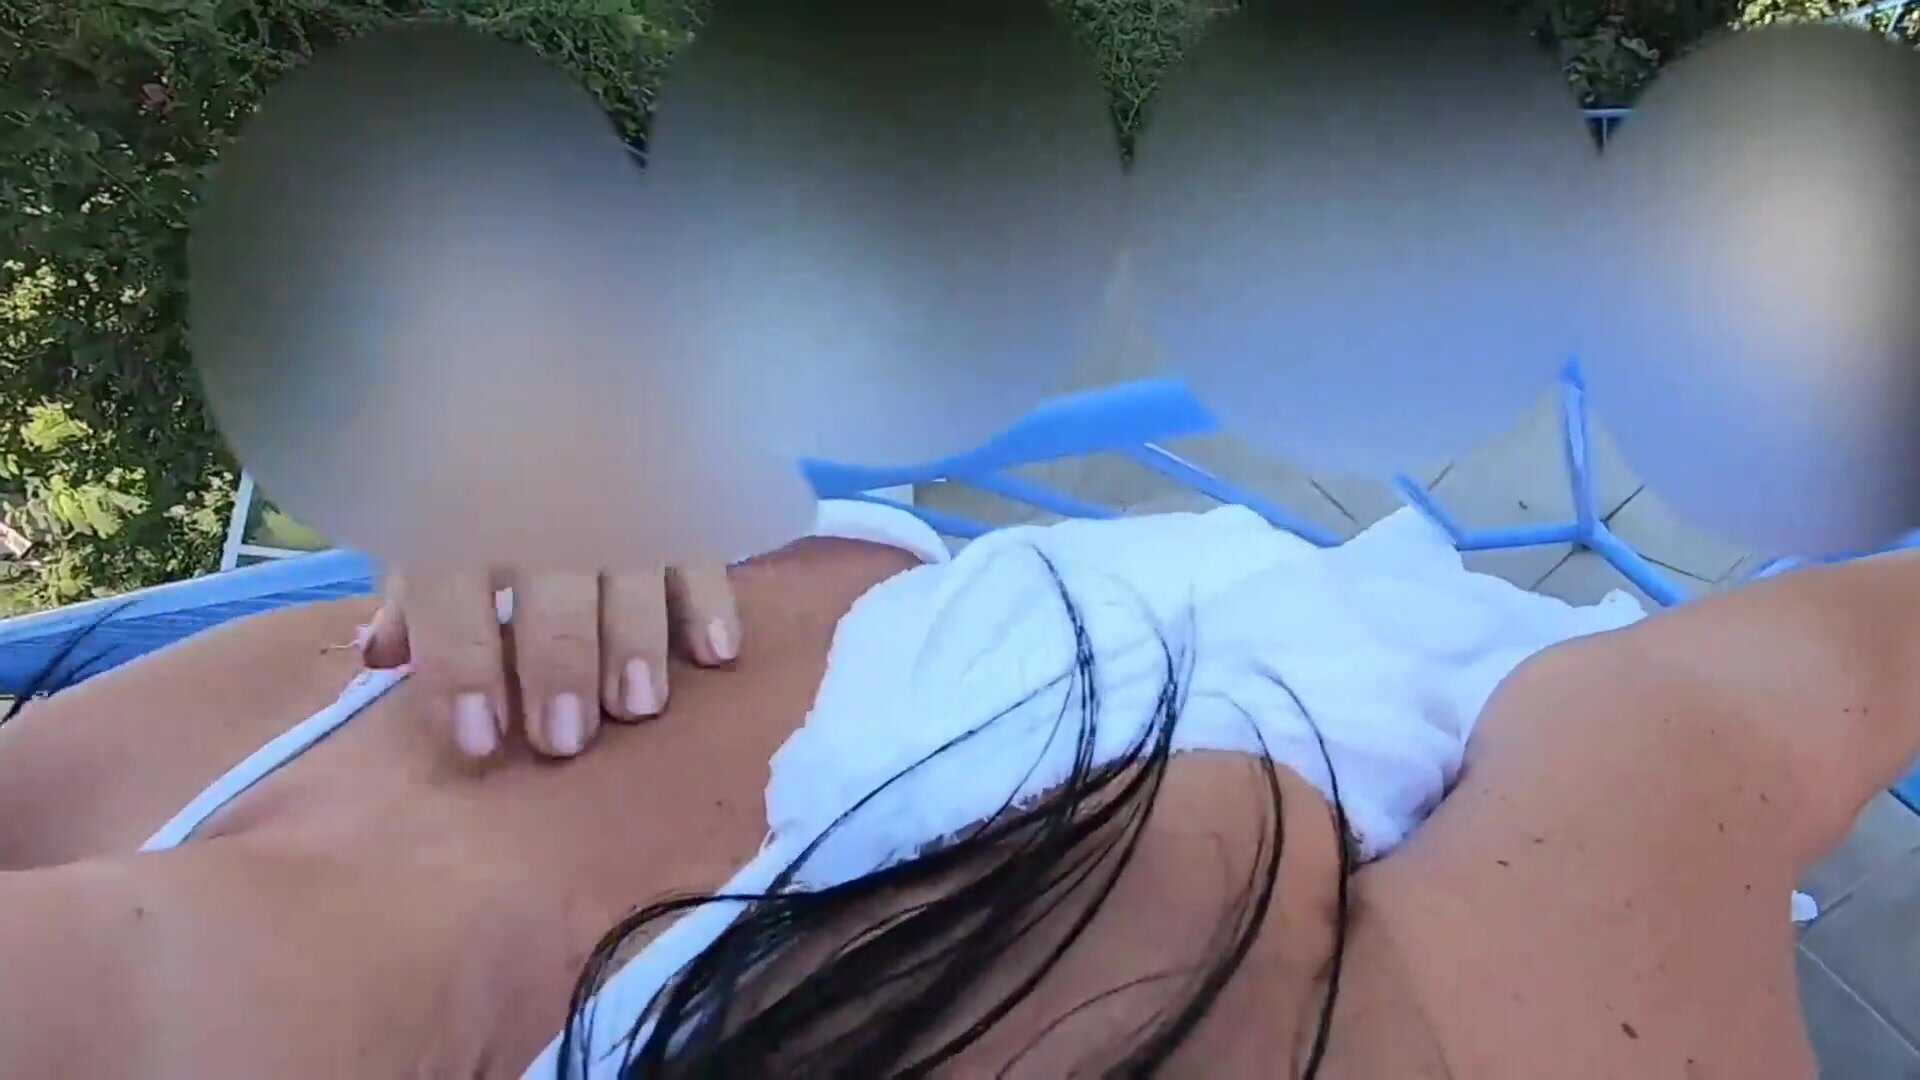 Duitse vrouw anale seks op het balkon in vakantie afbeelding